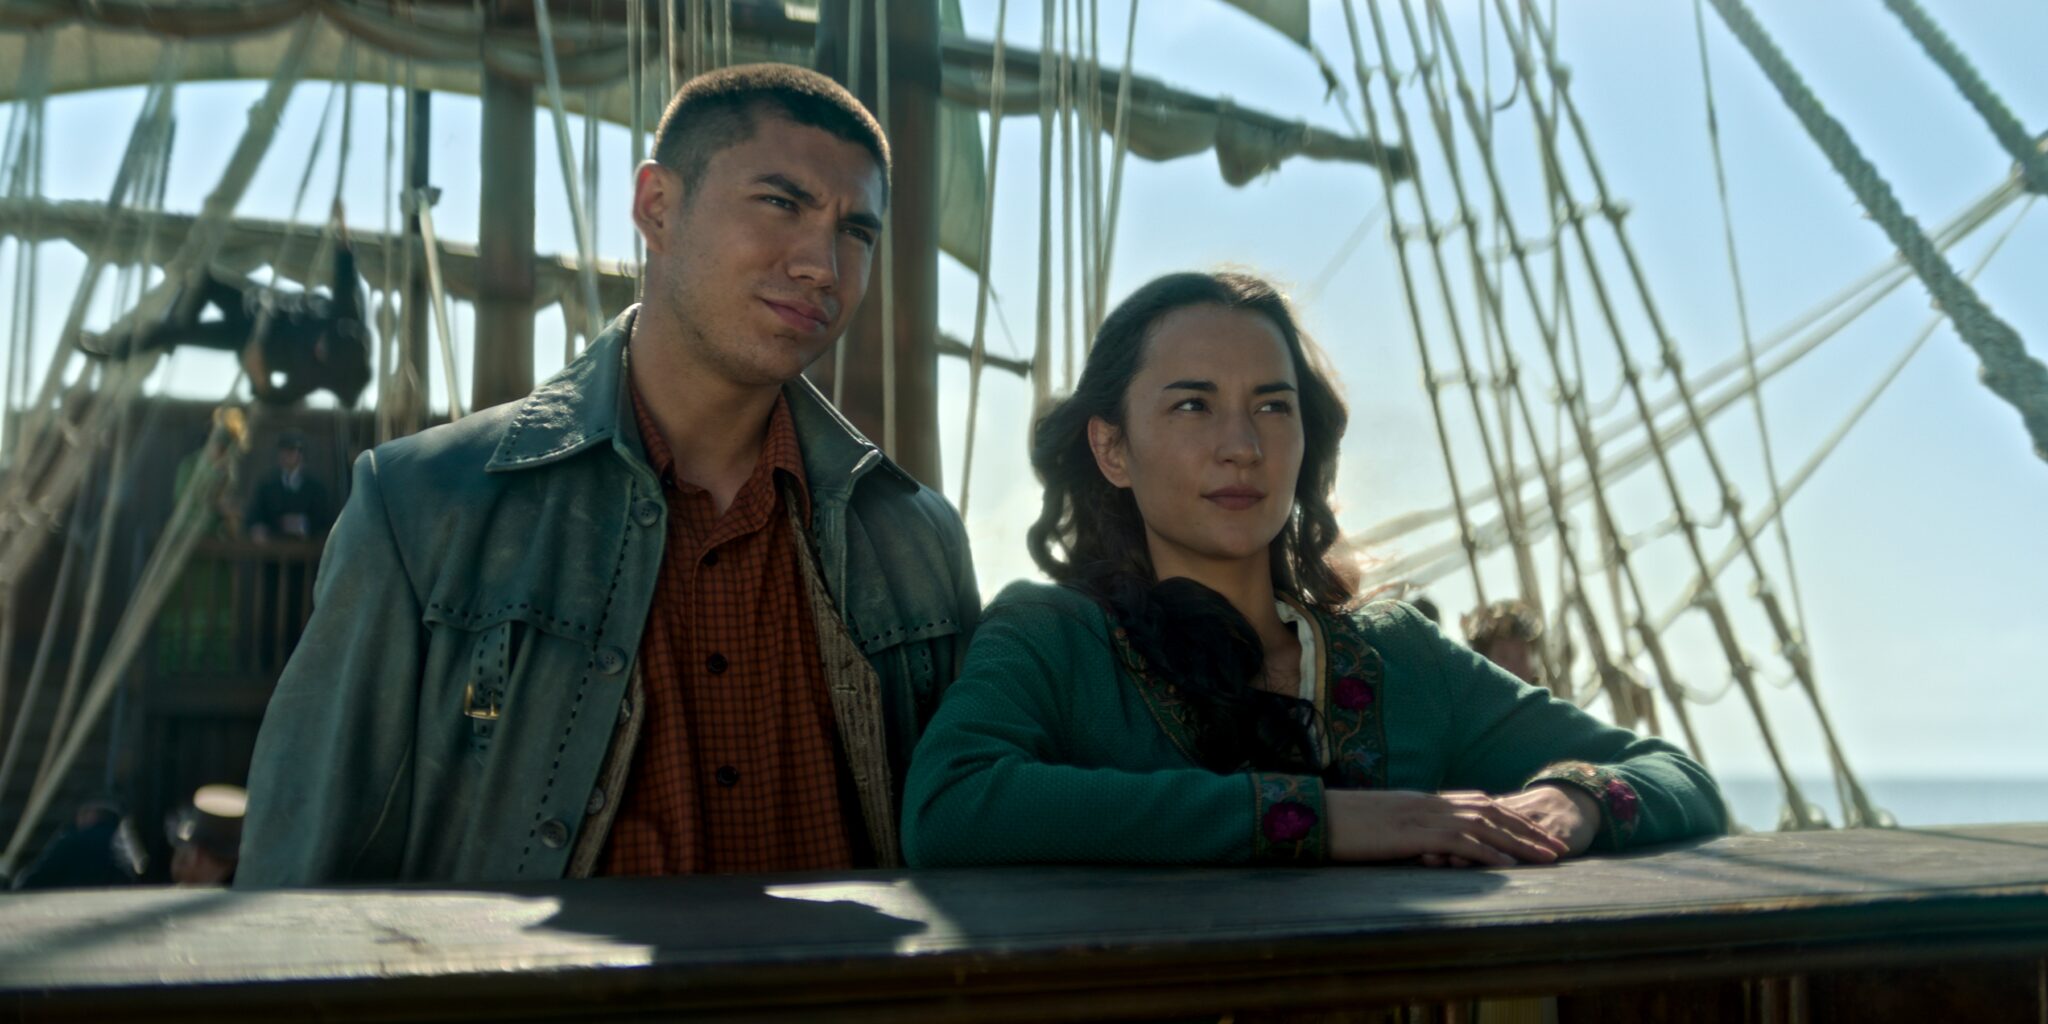 Archie Renaux als Malyen Oretsev, Jessie Mei Li als Alina Starkov in Shadow and Bone an Bord eines Segelschiffes.